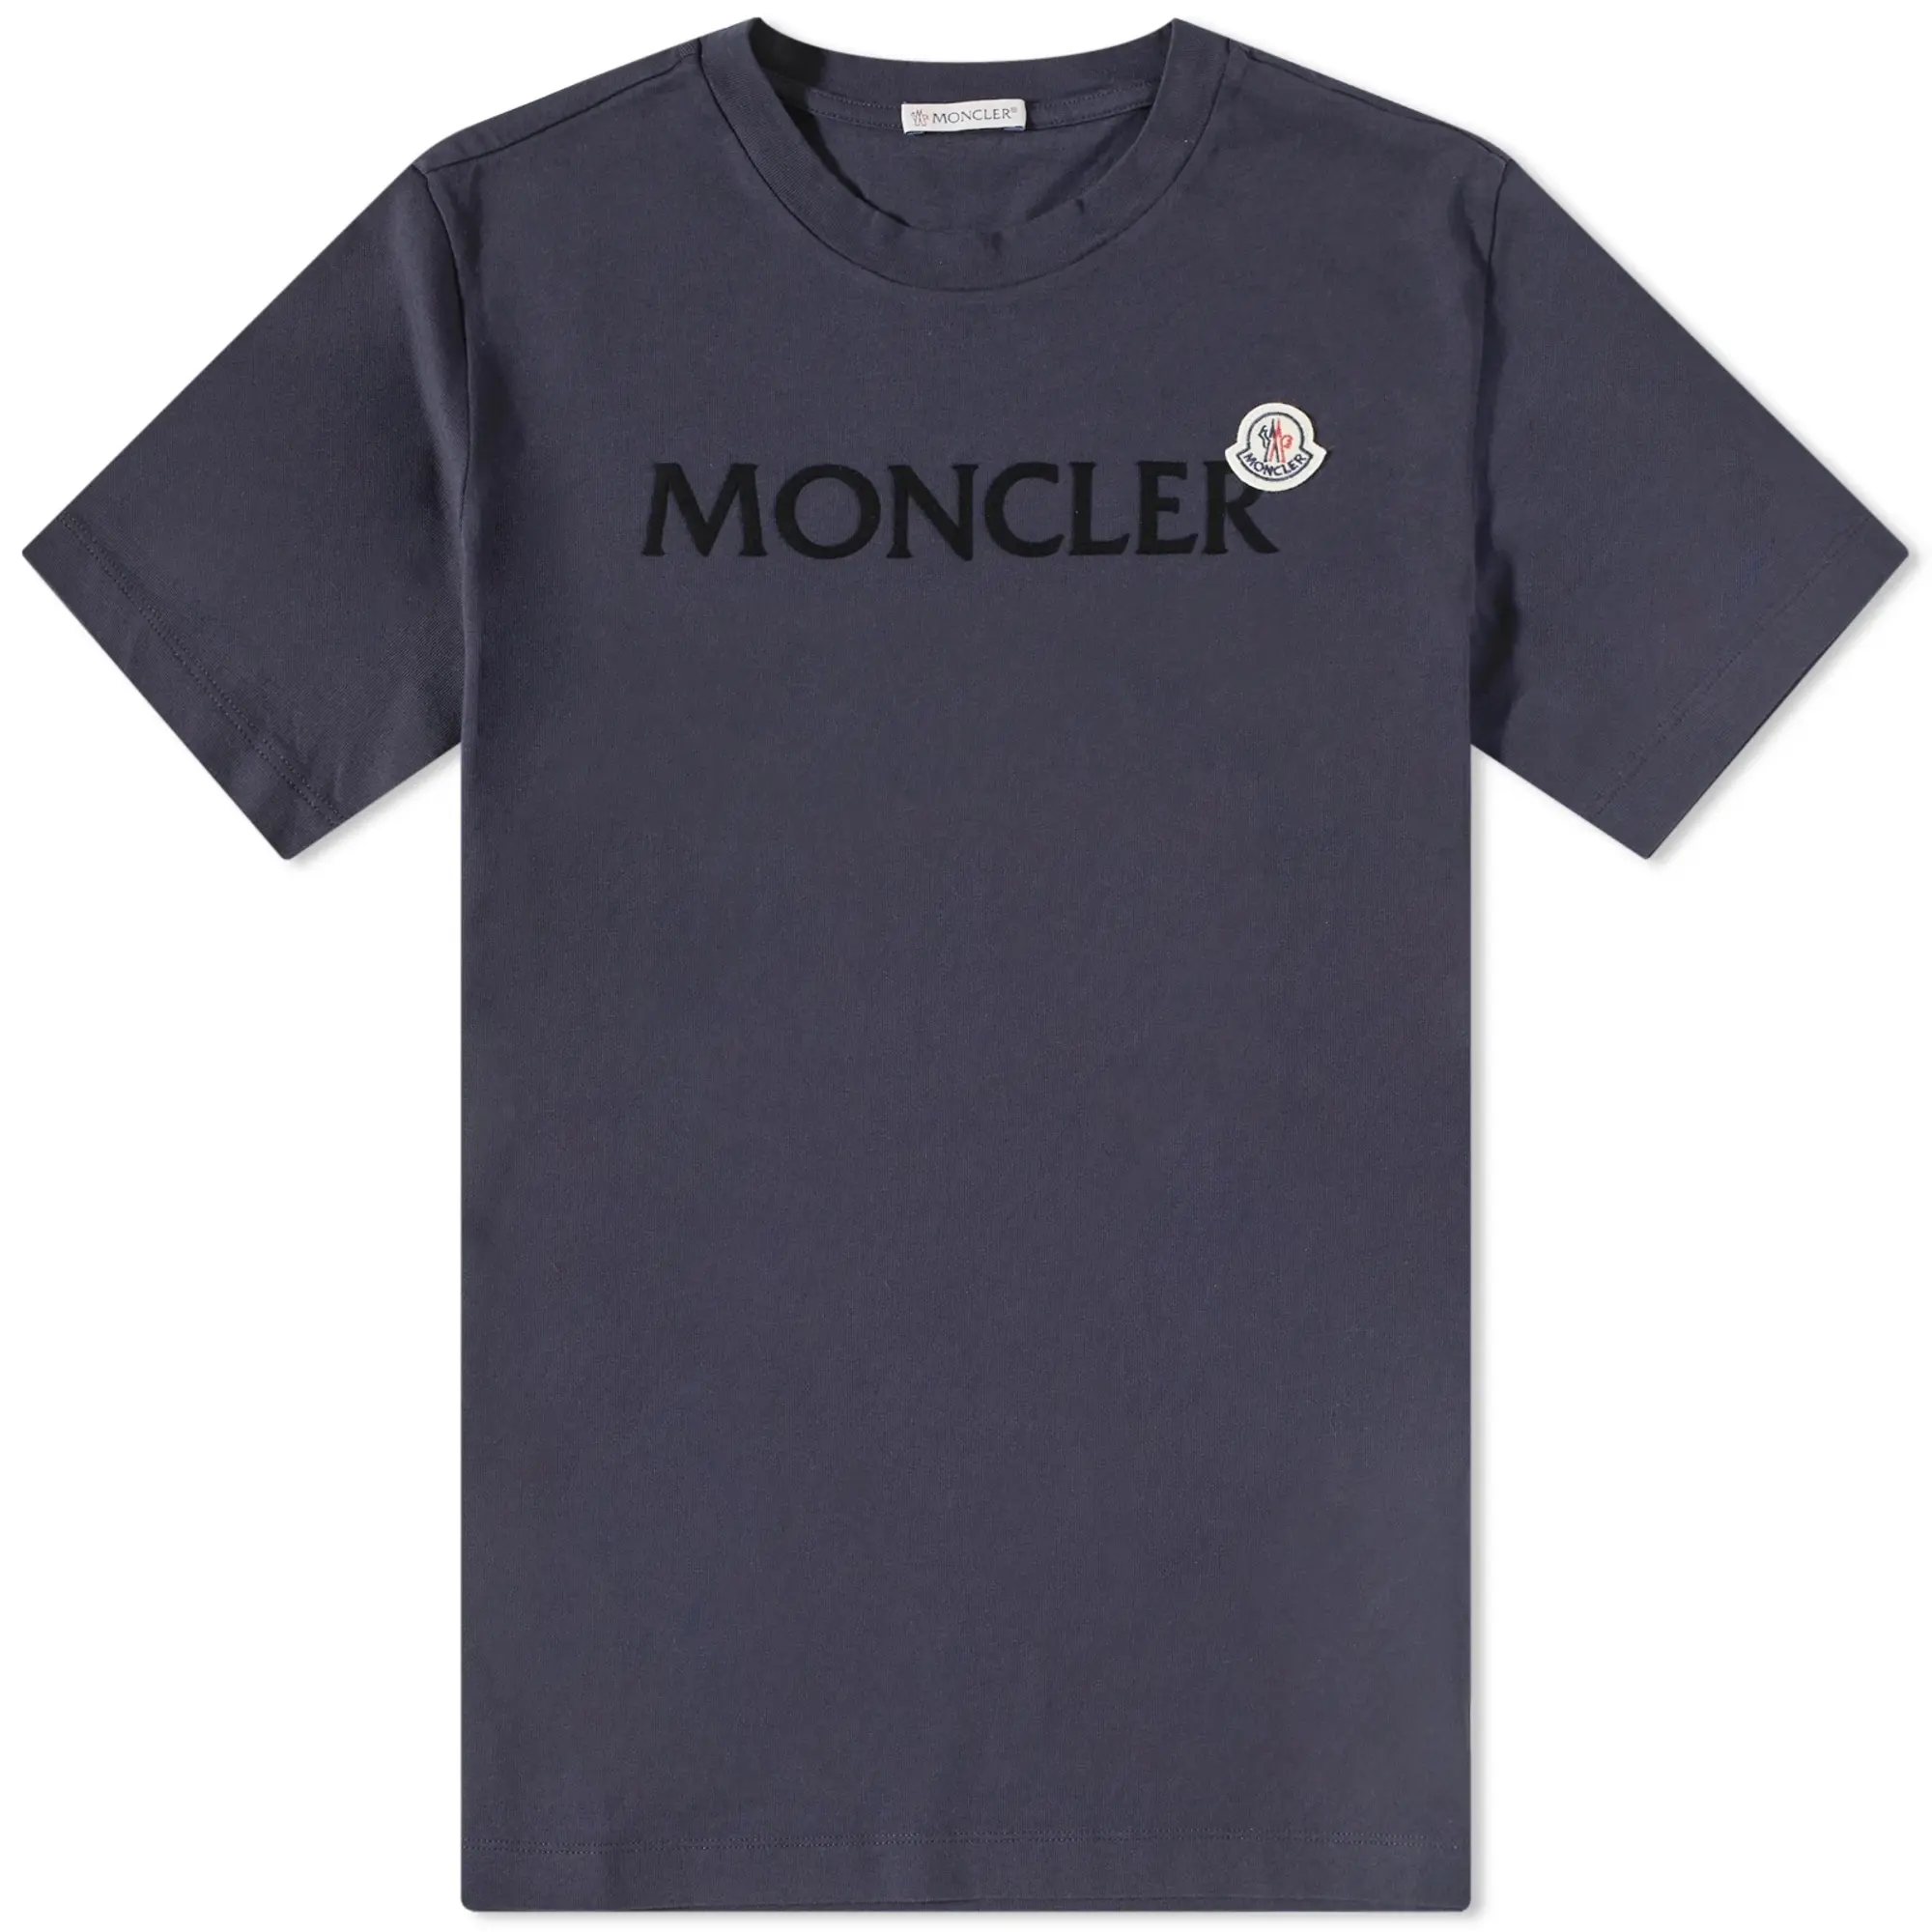 Moncler Men's Text Logo T-Shirt Navy